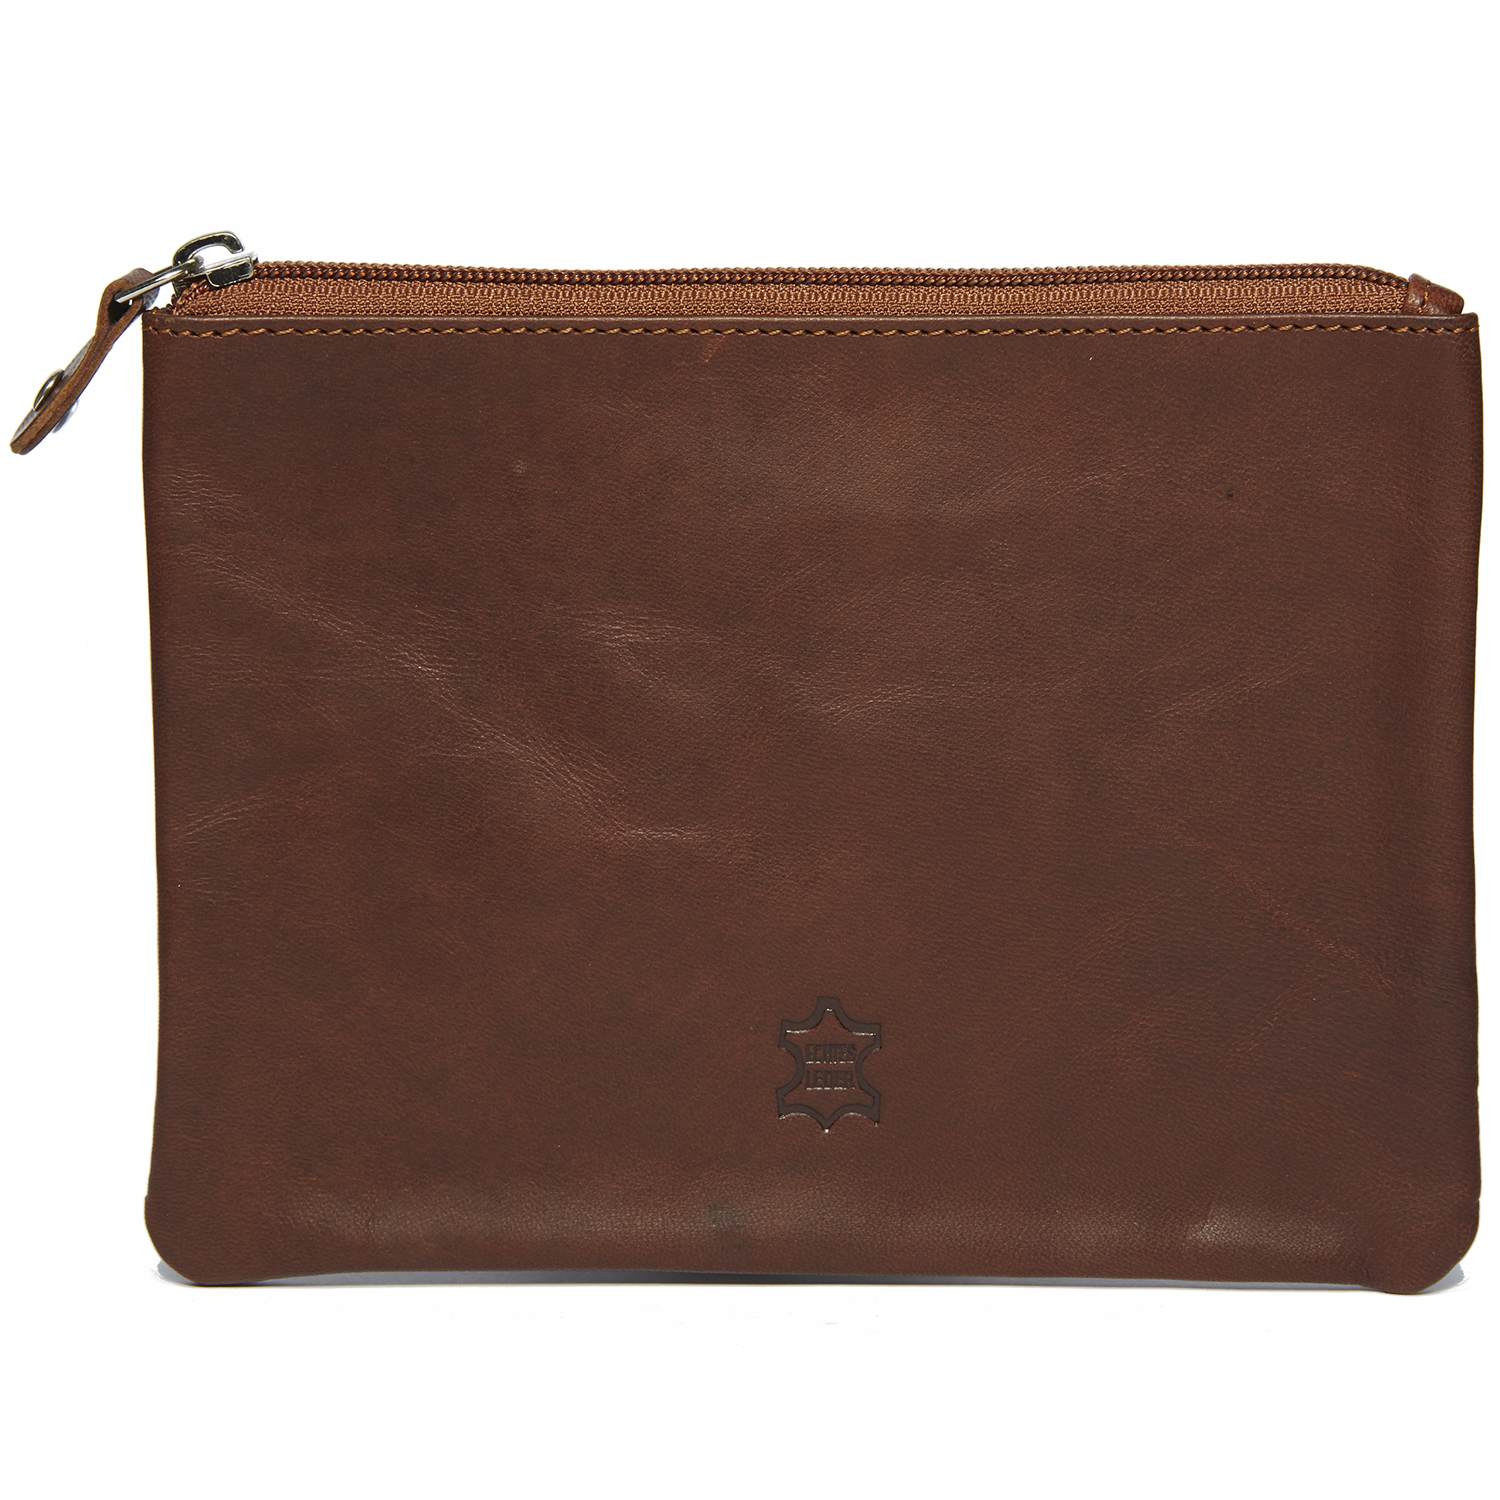 3x Banktasche Geldtasche Geldmappe Tasche mit Reißverschluss Aufbewahrungstasche 